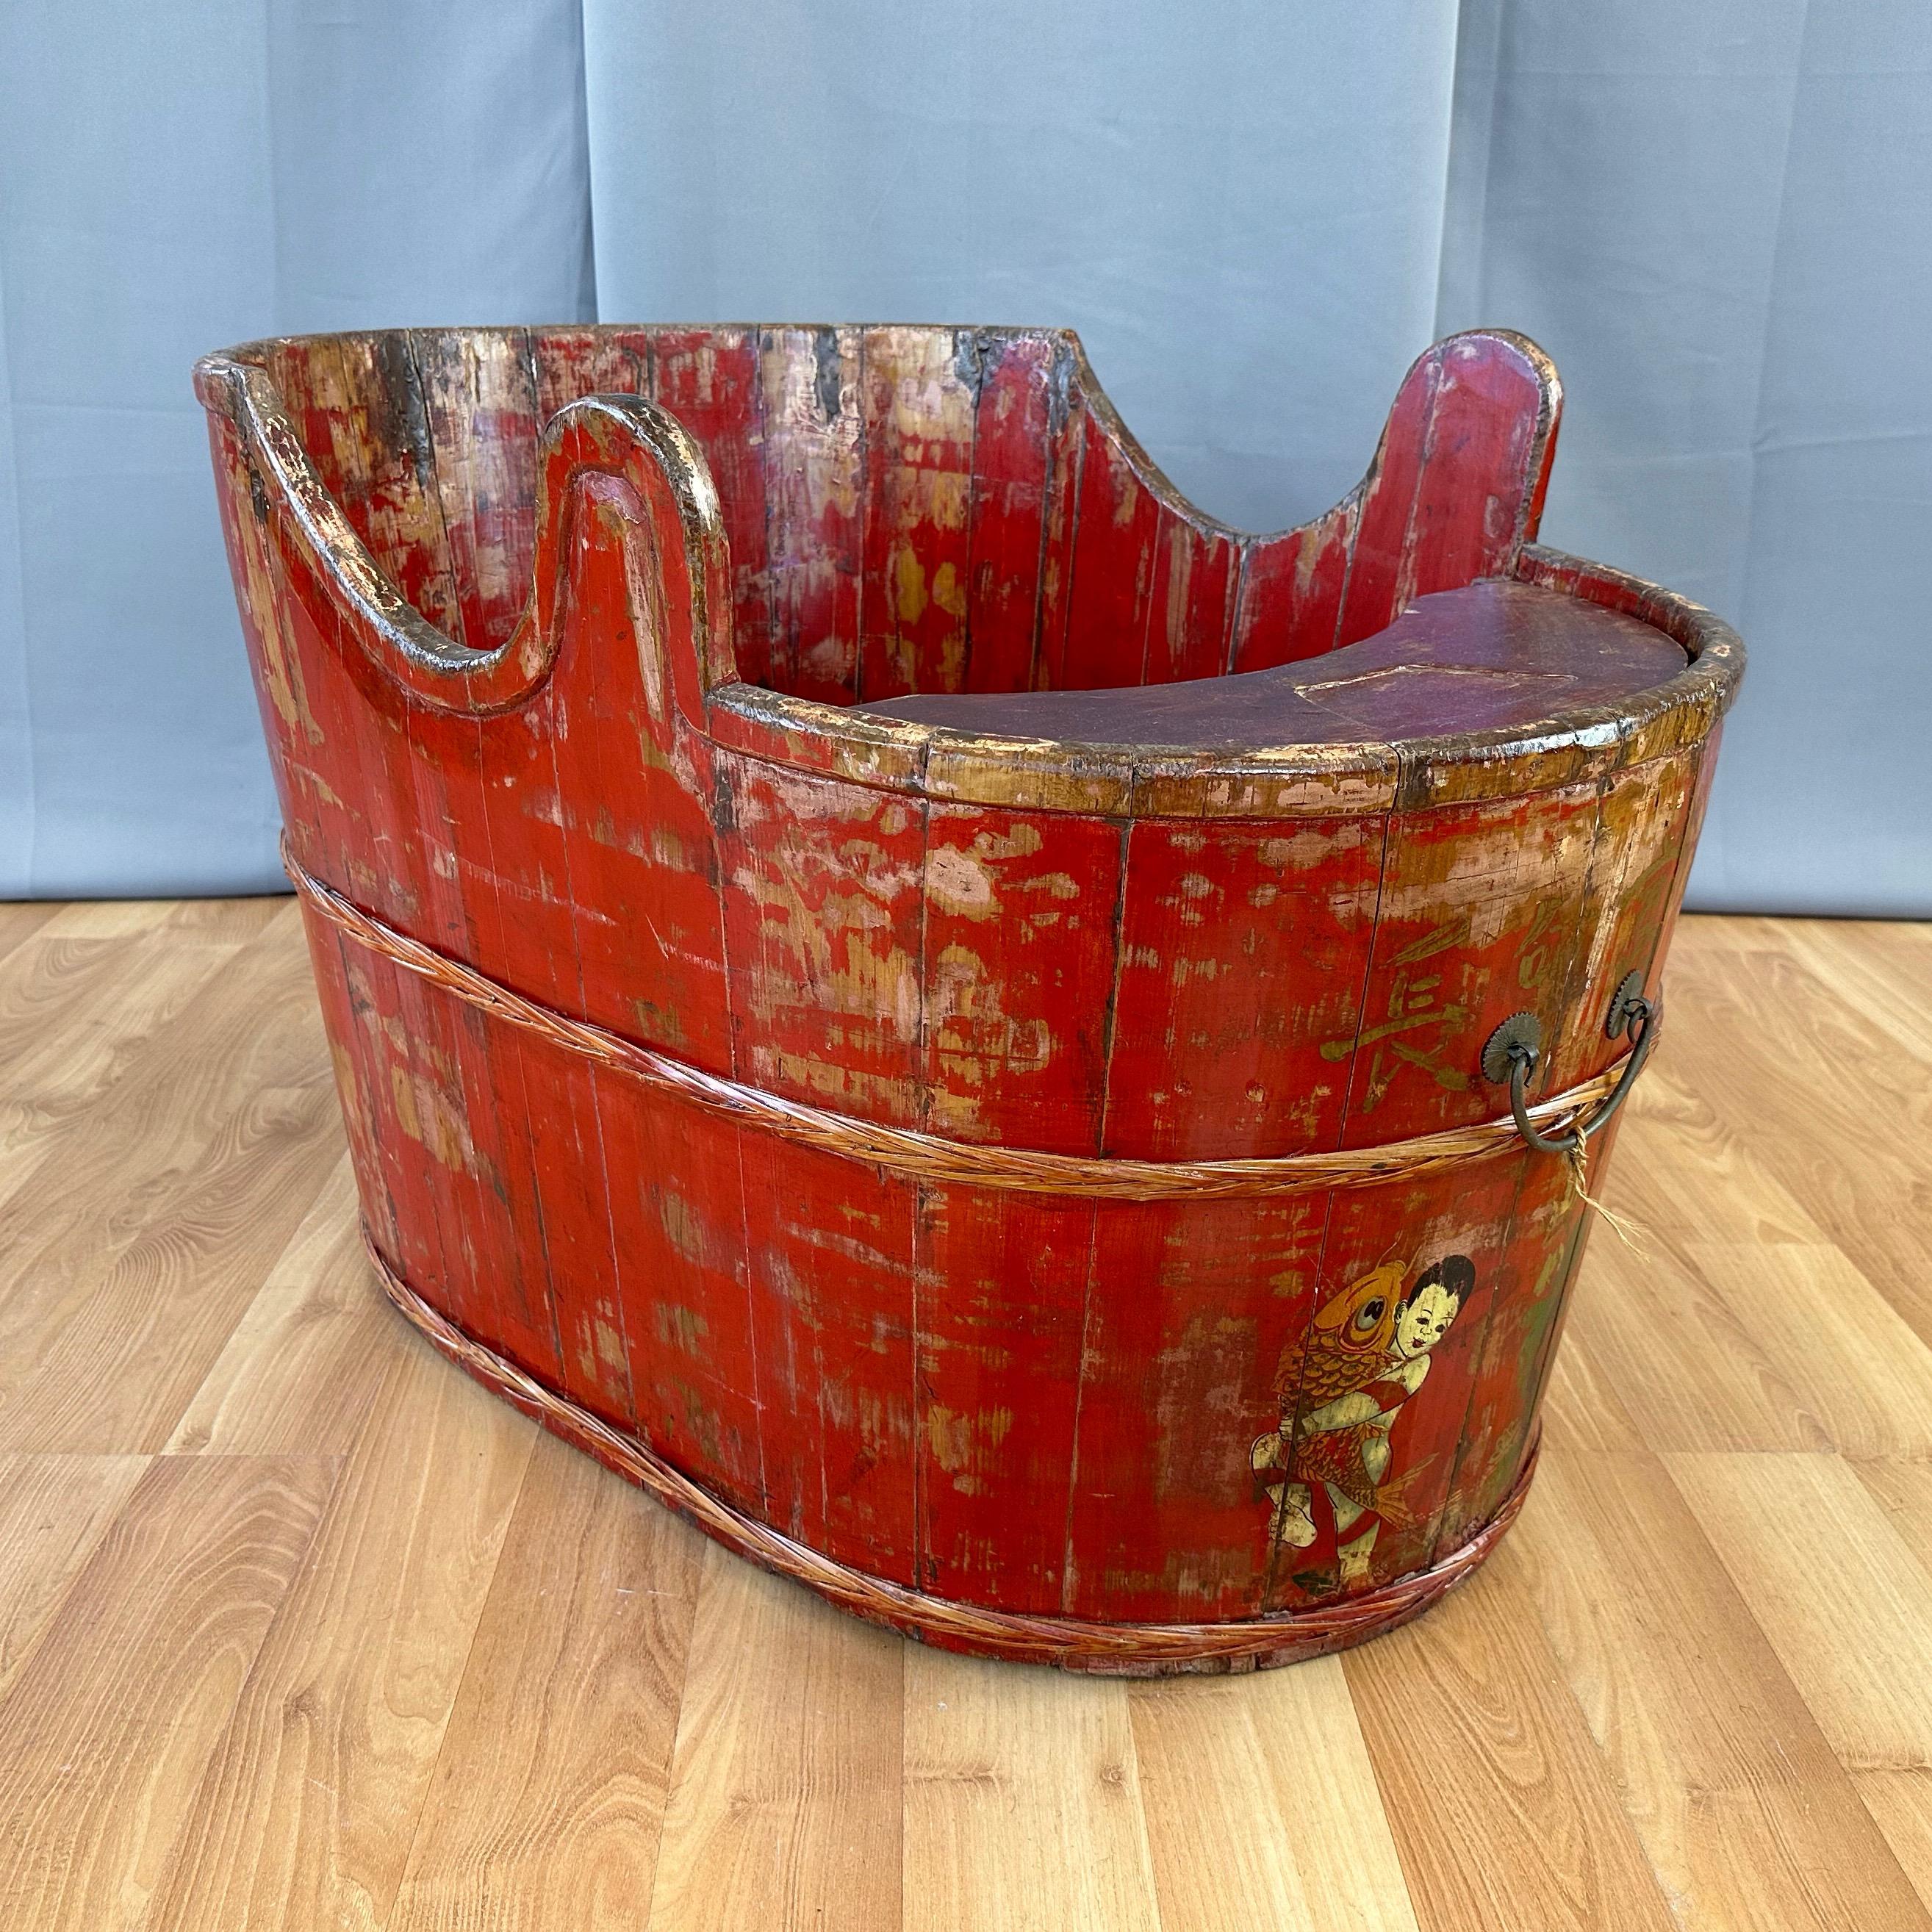 Eine entzückende CIRCA 1900 Qing-Ära chinesischen rot lackiertem Holz Kind umwandelbar Kombination Badewanne und Sitz.

Ovaler Korpus aus Stäbchenholz mit leuchtend roter Lackierung und Klarlack. Die Rückseite ist höher als die Vorderseite, und auf